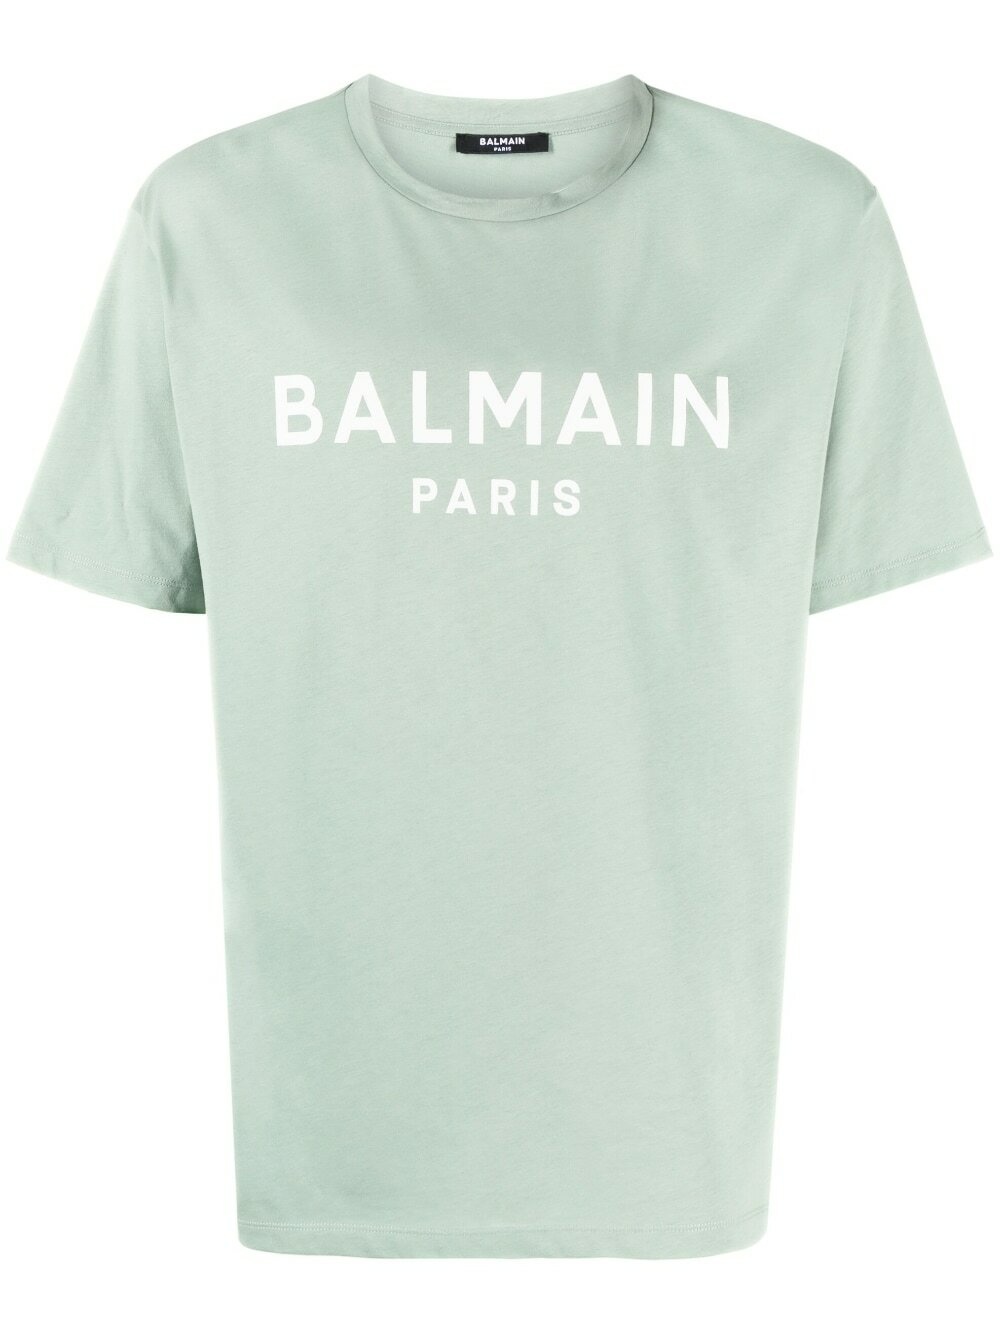 BALMAIN - T-shirt With Logo Balmain